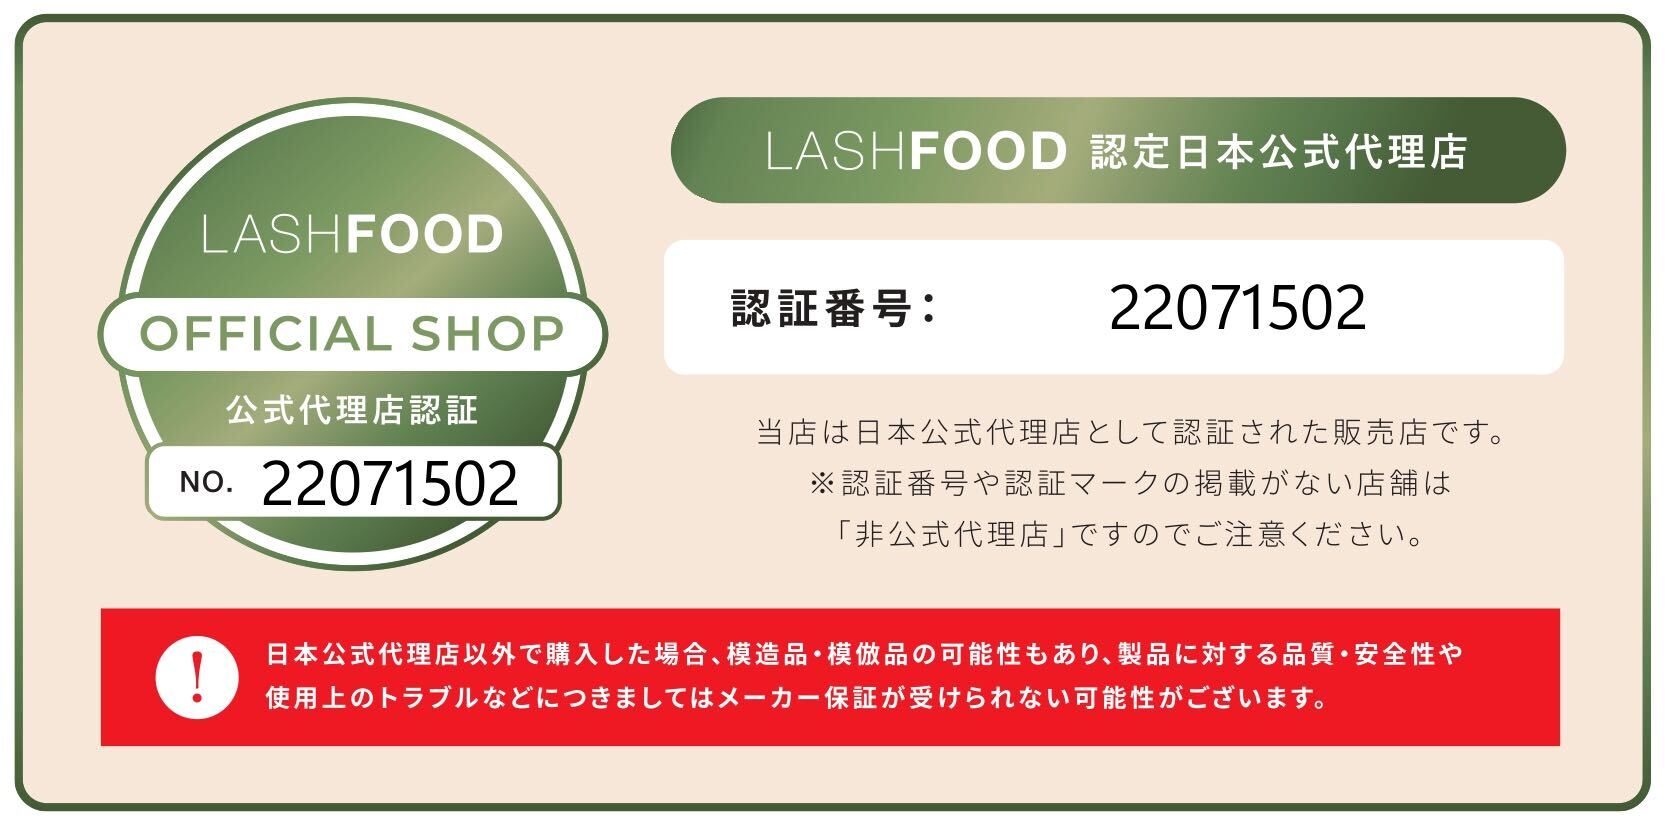 ラッシュフード/LASH FOOD is authority